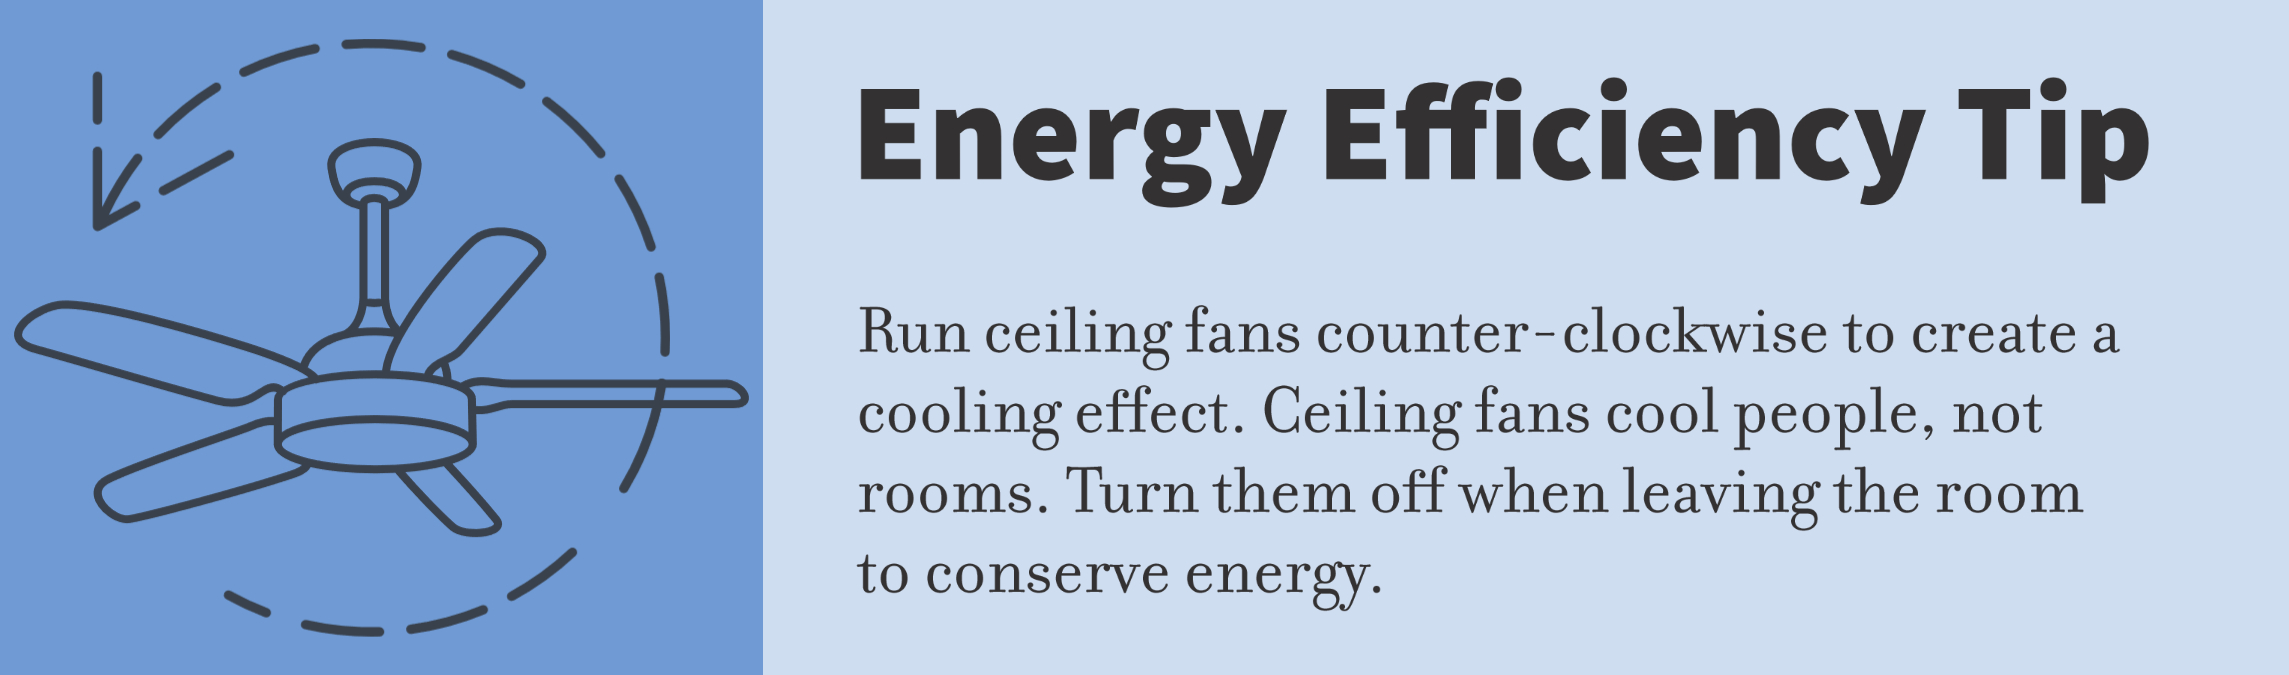 Ceiling fan energy efficiency tip